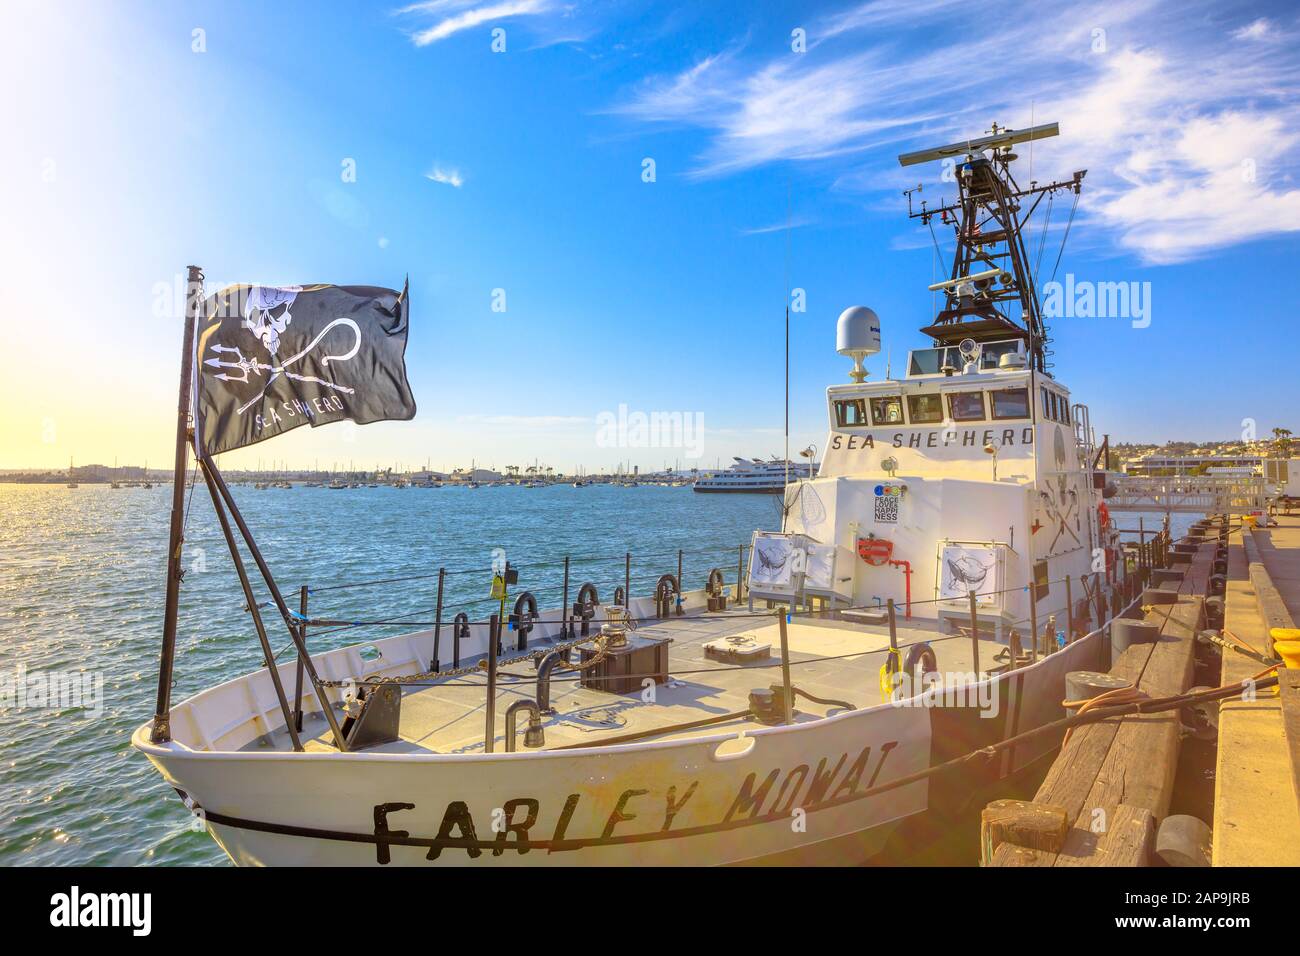 San Diego, Navy Pier, Californie, ÉTATS-UNIS - 1 août 2018:Farley Mowat Ship of the Sea Shepherd conservation Society, contre la chasse à la baleine et Banque D'Images